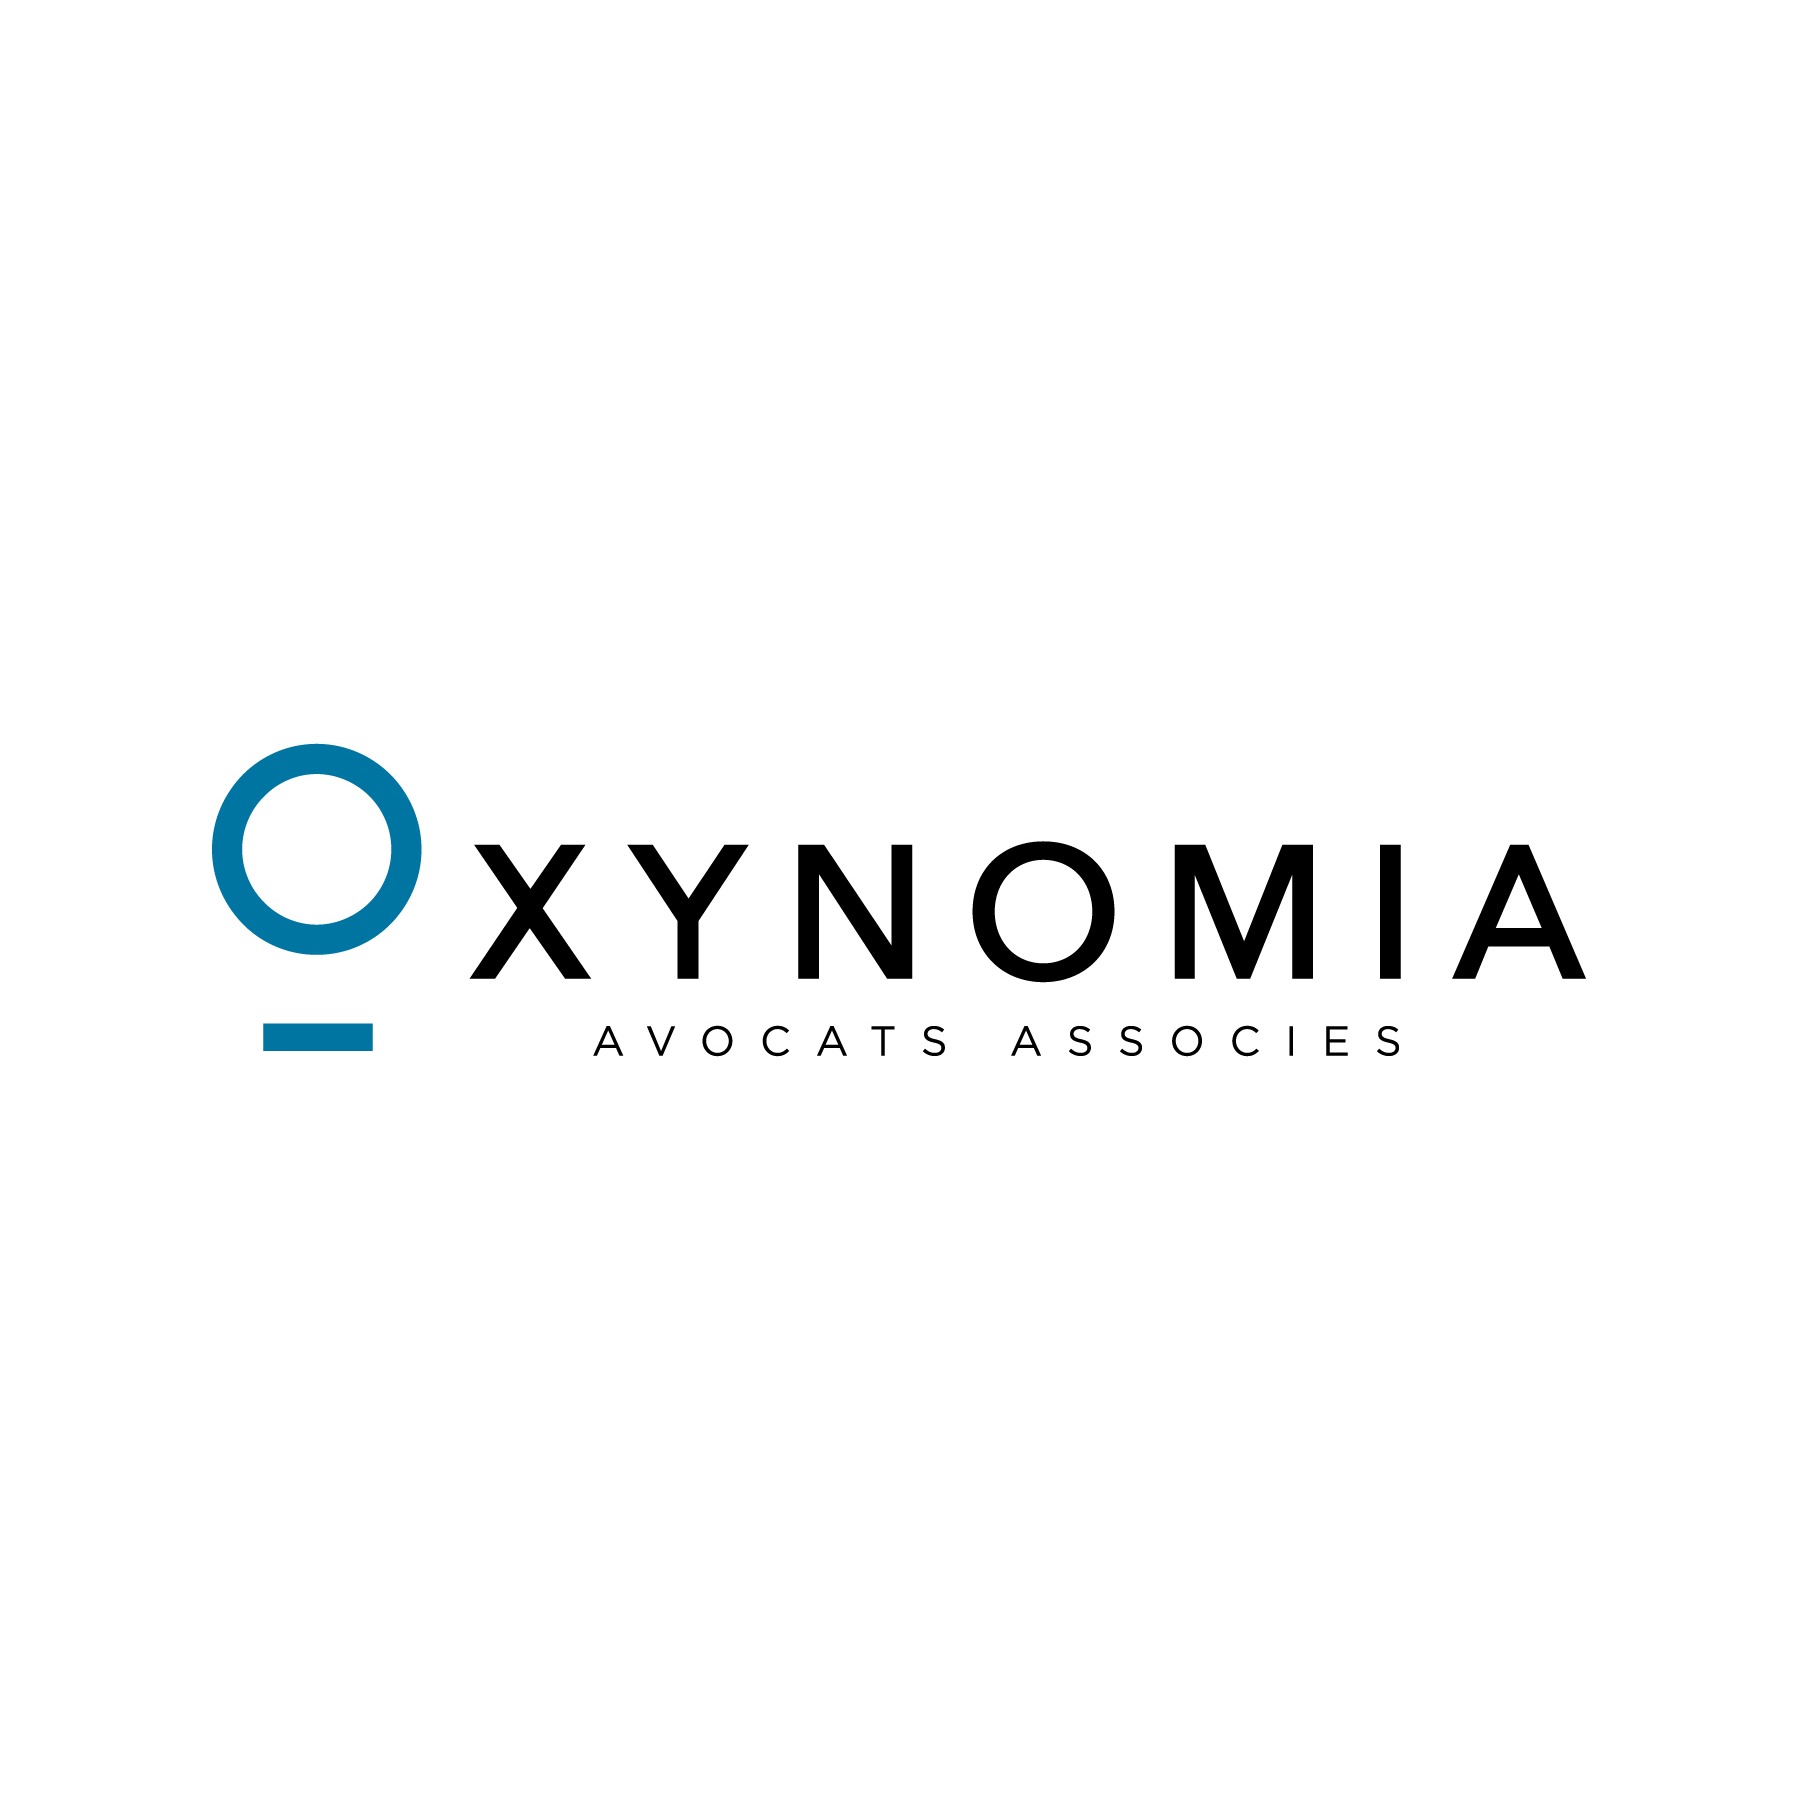 Oxynomia Avocats Associés